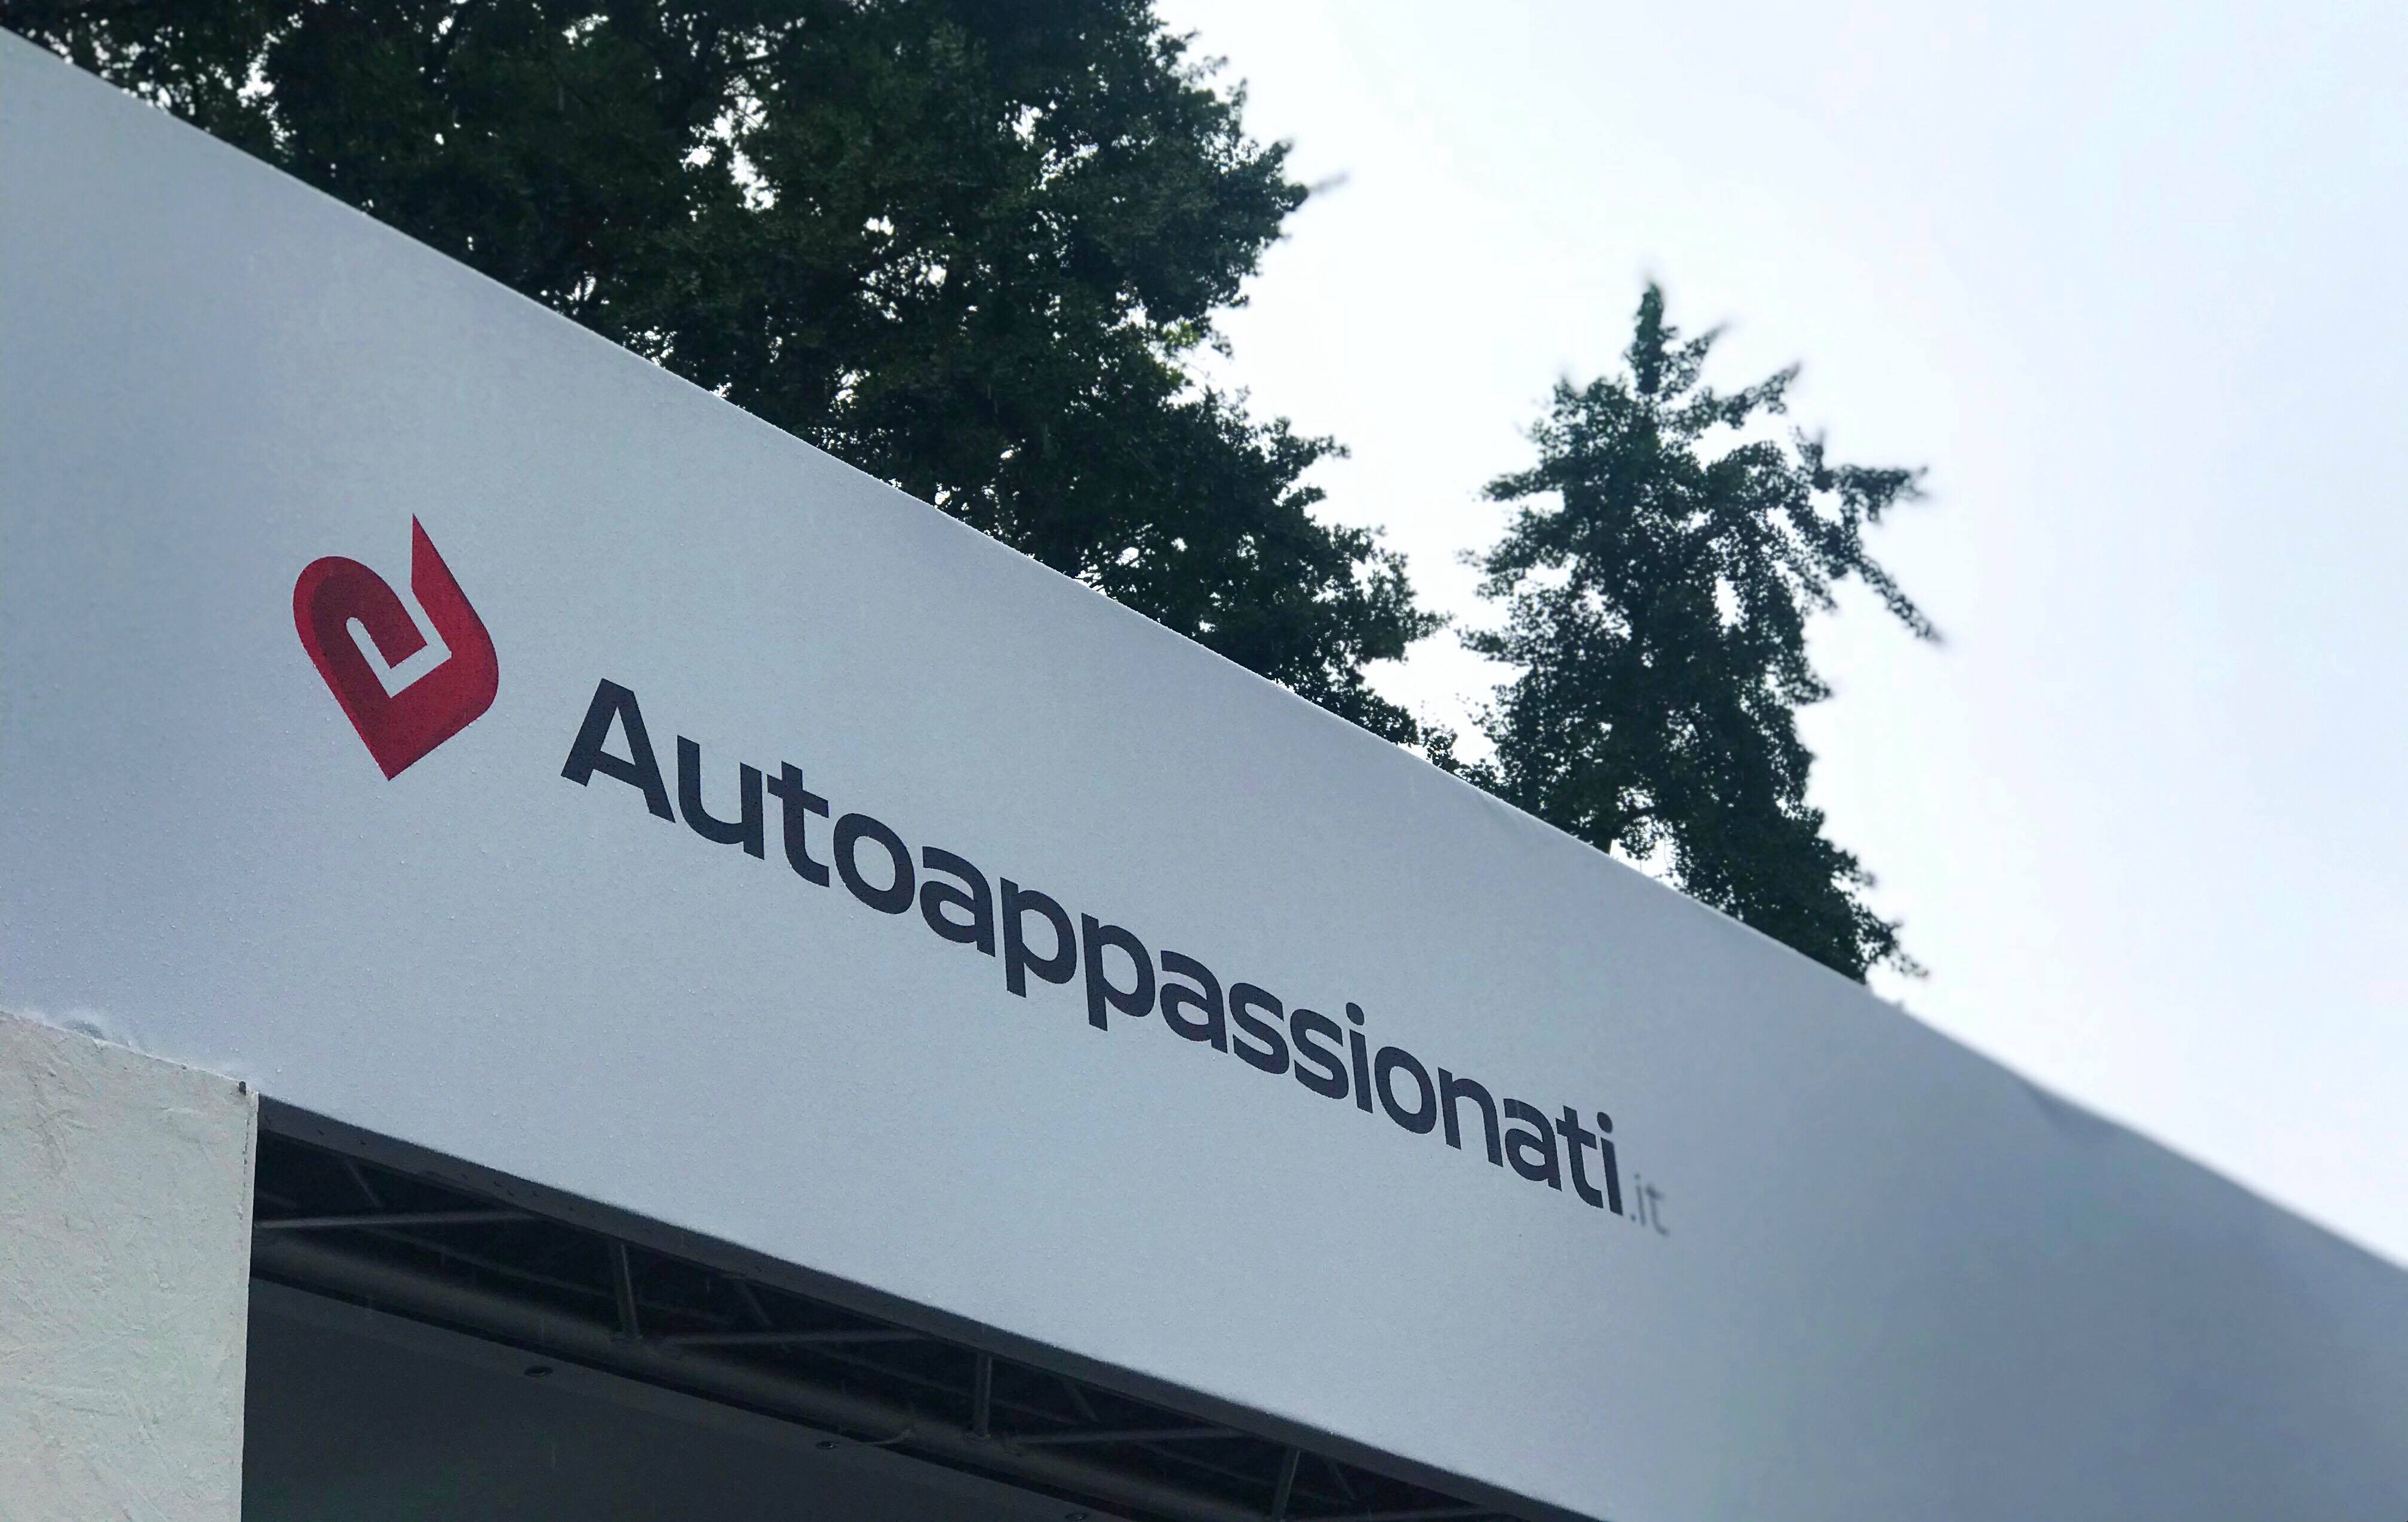 Autoappassionati.it Parco Valentino 2018